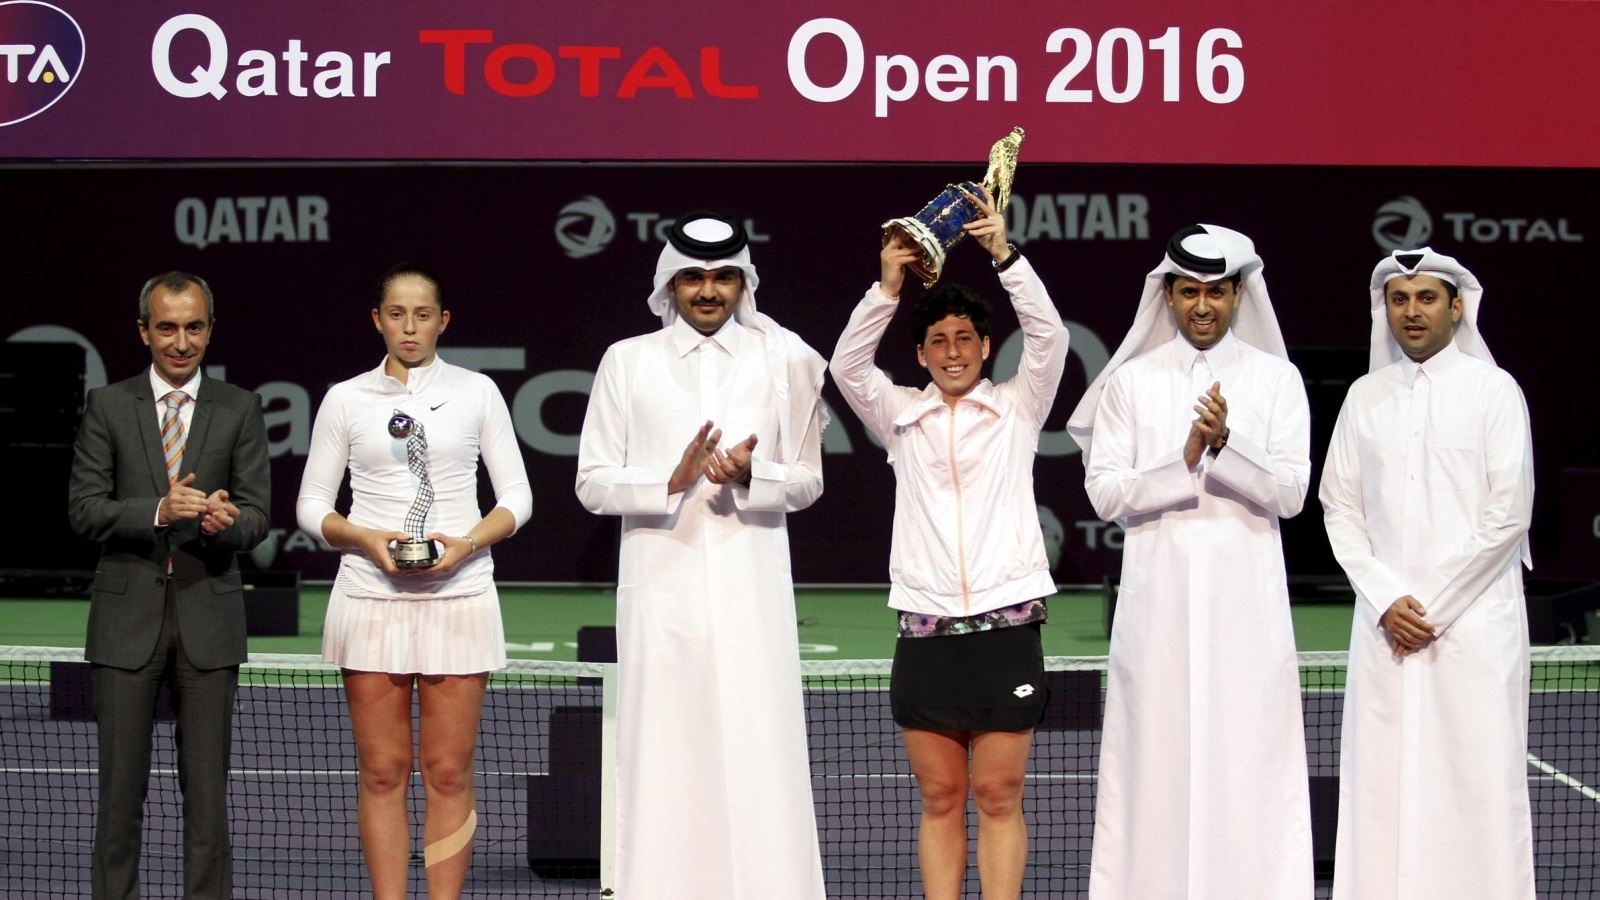 ‪بطولة قطر المفتوحة للتنس للرجال والسيدات تقام منذ سنوات بالدوحة‬  